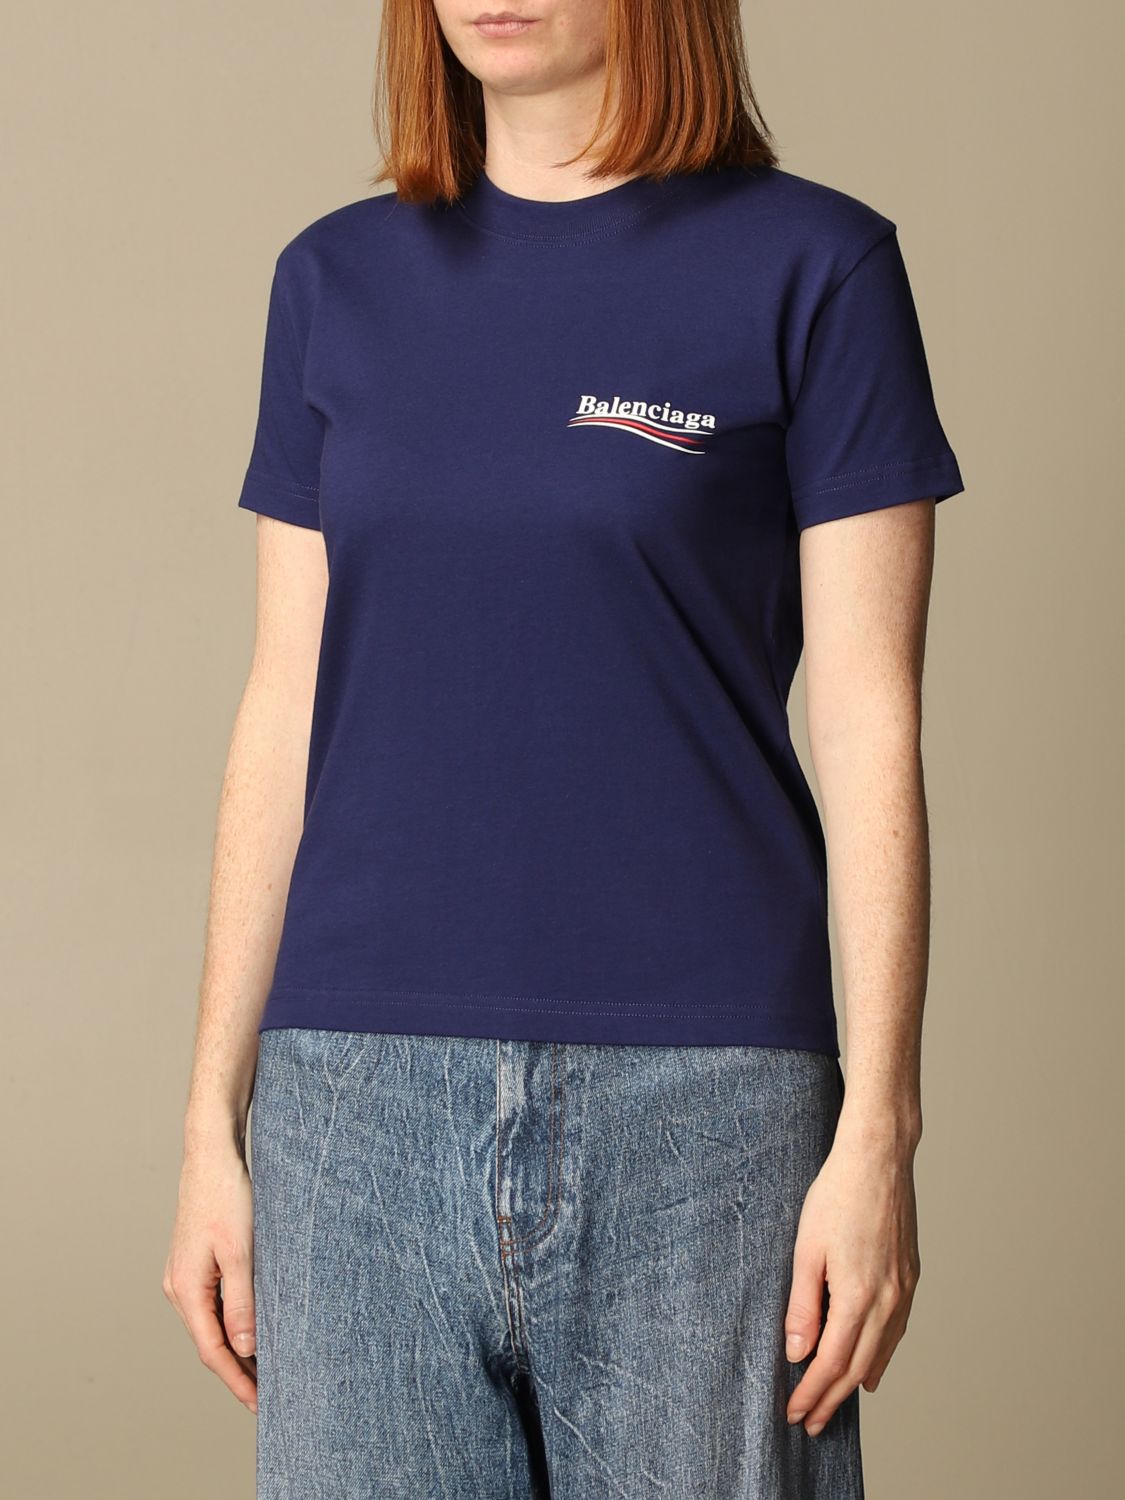 Balenciaga Printed Logo Oversized Tshirt  Farfetch